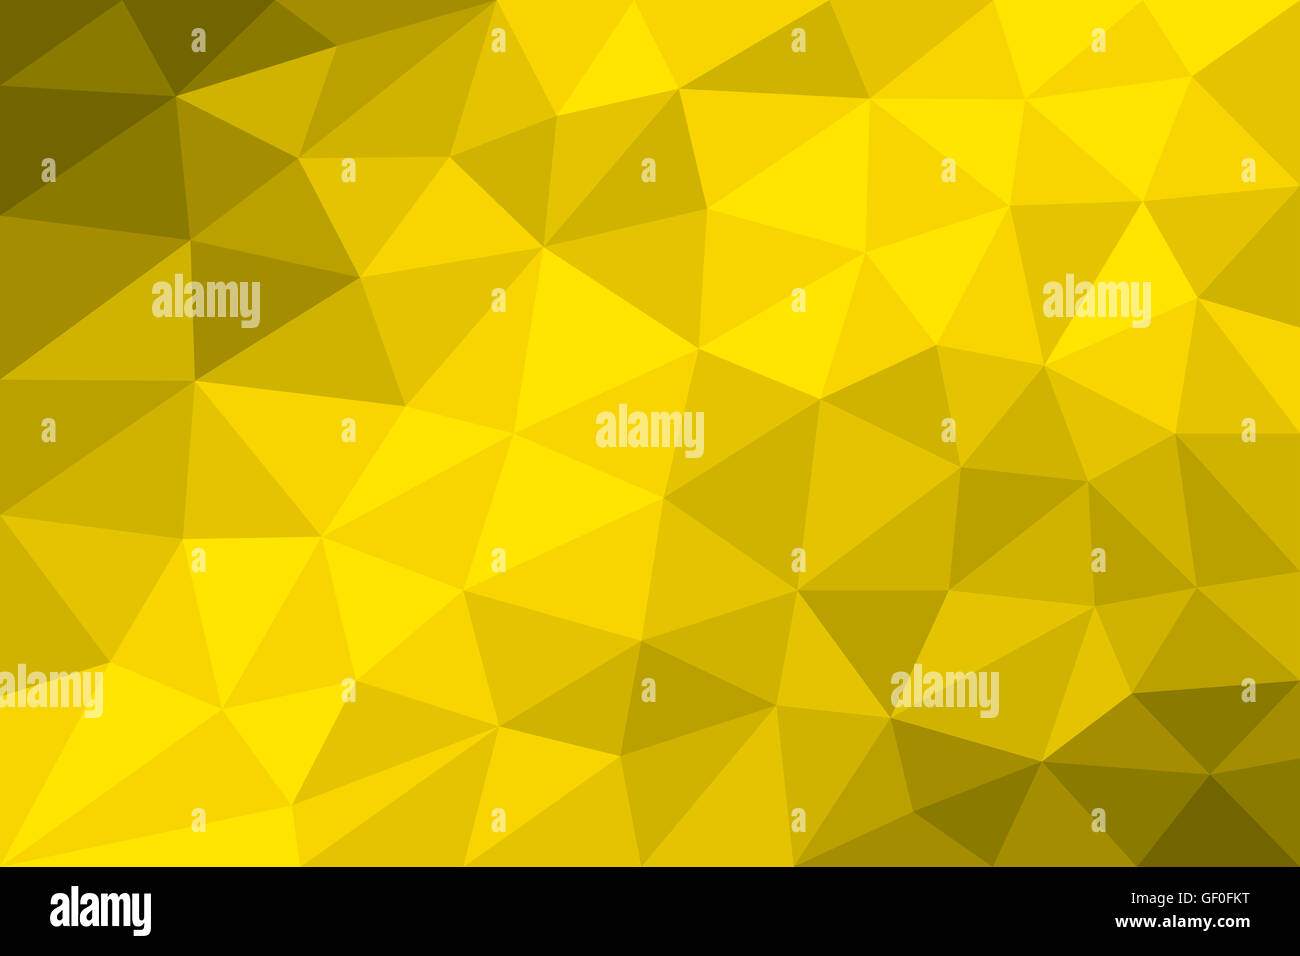 Bassa poli sfondo giallo formata con triangoli di diverse dimensioni. Variazione del graduate campi gialli. Illustrazione. Foto Stock